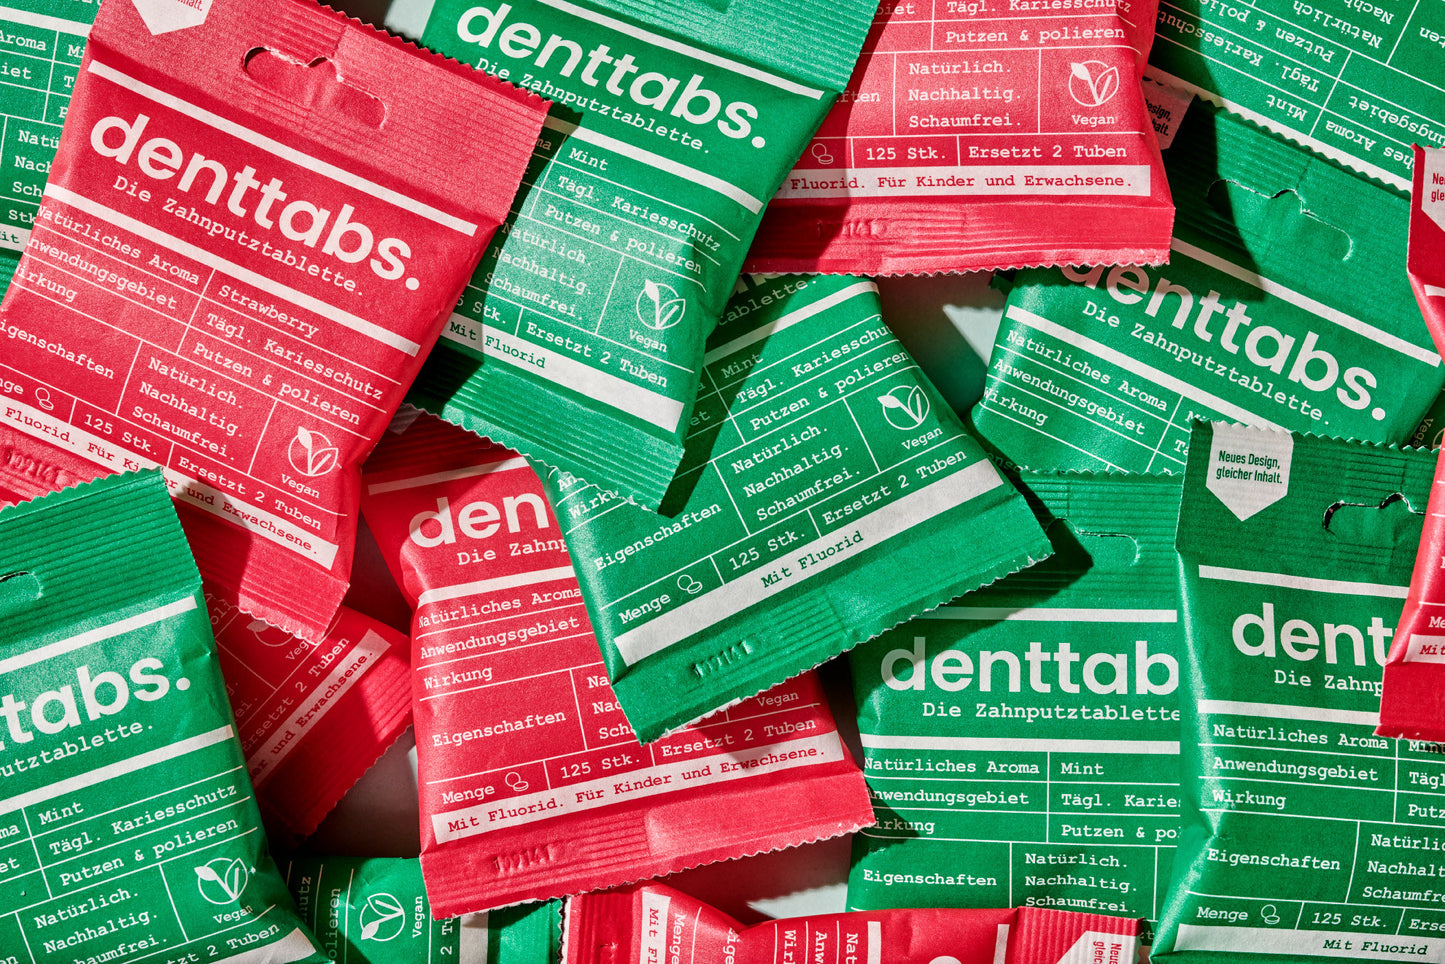 公司正品 德國牙膏錠 125 顆一包 德國第一品牌 denttabs. 愛護地球 立即開始